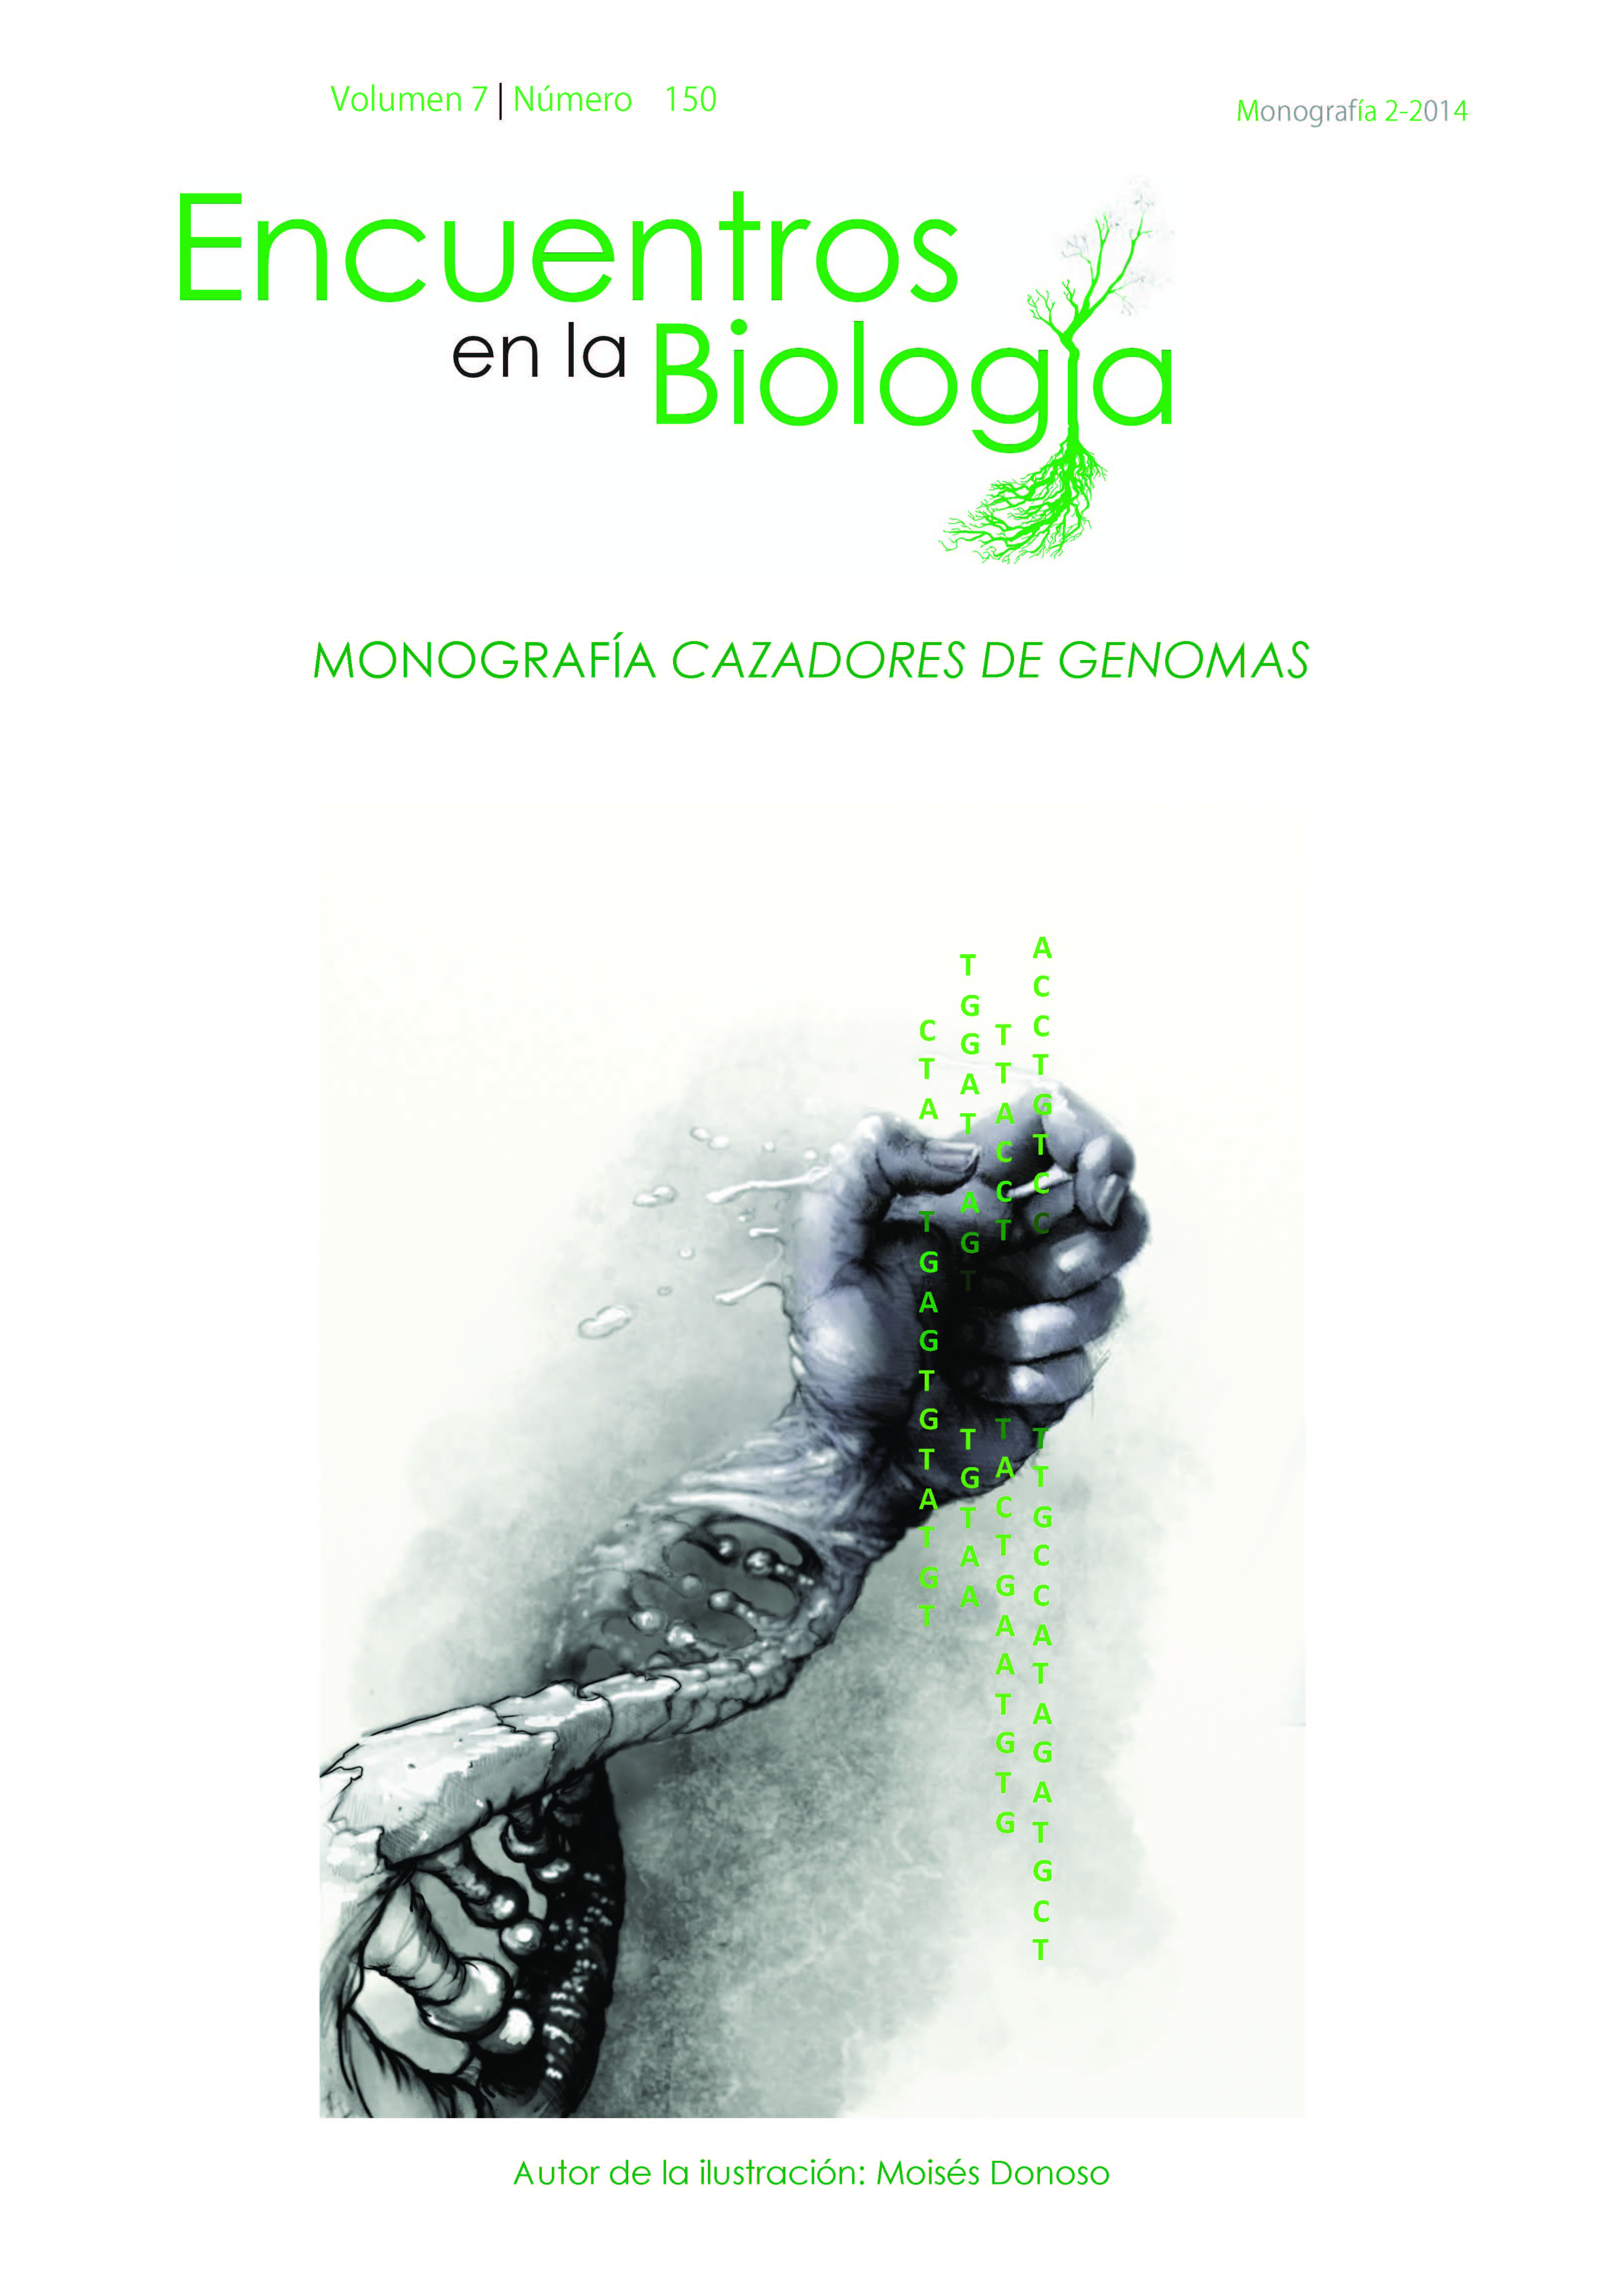 					Ver Vol. 7 Núm. 150 (2014): Monografía cazadores de Genoma 
				